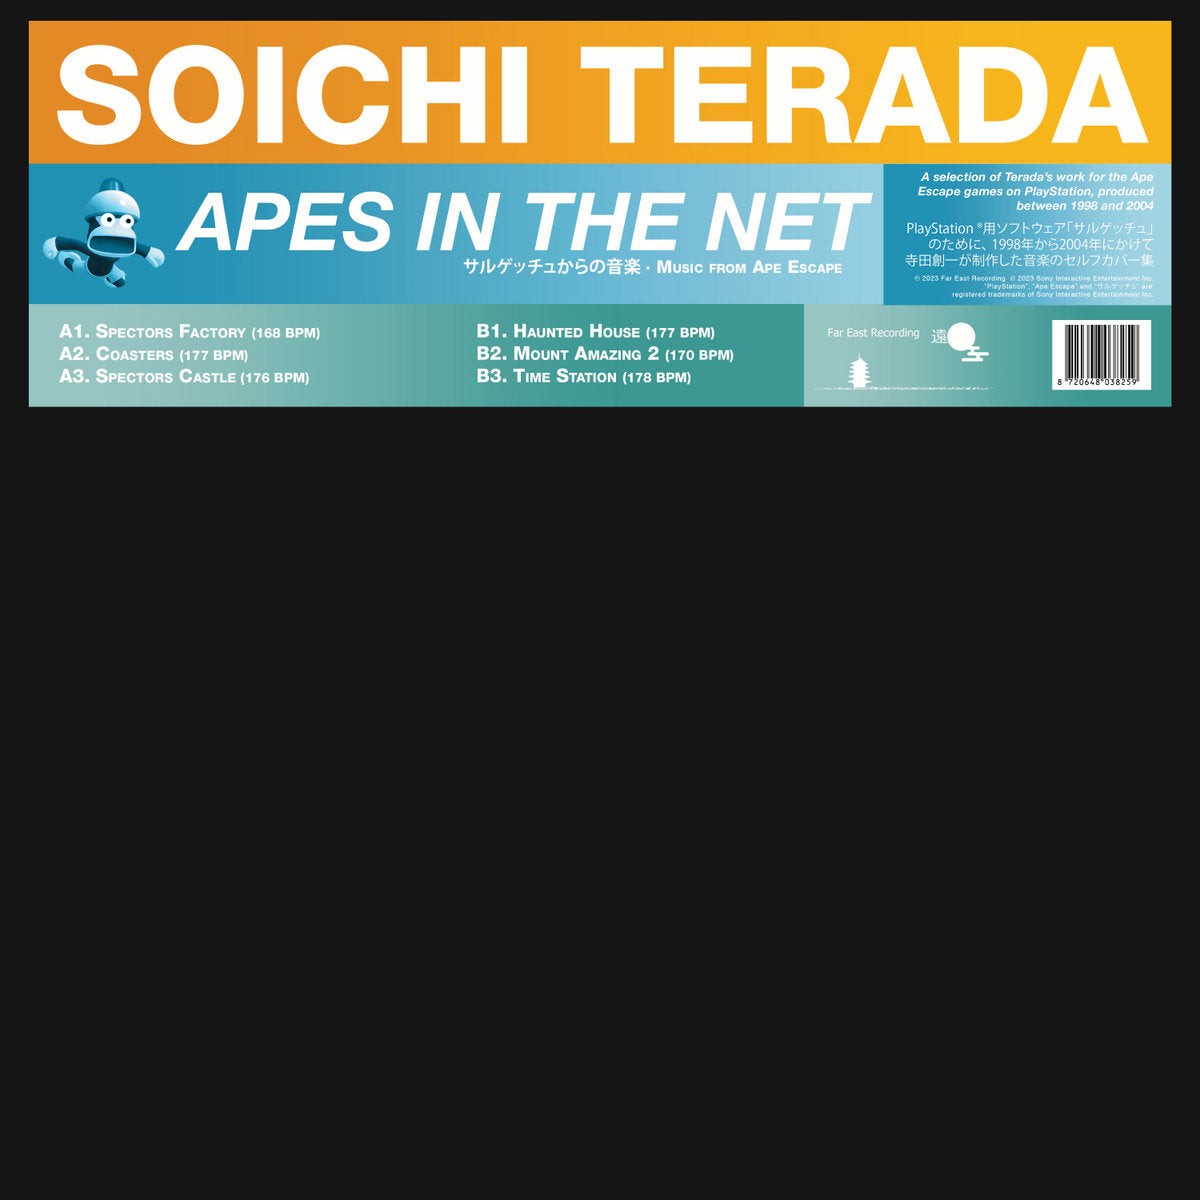 Terada, Soichi "Apes In The Net" 12"